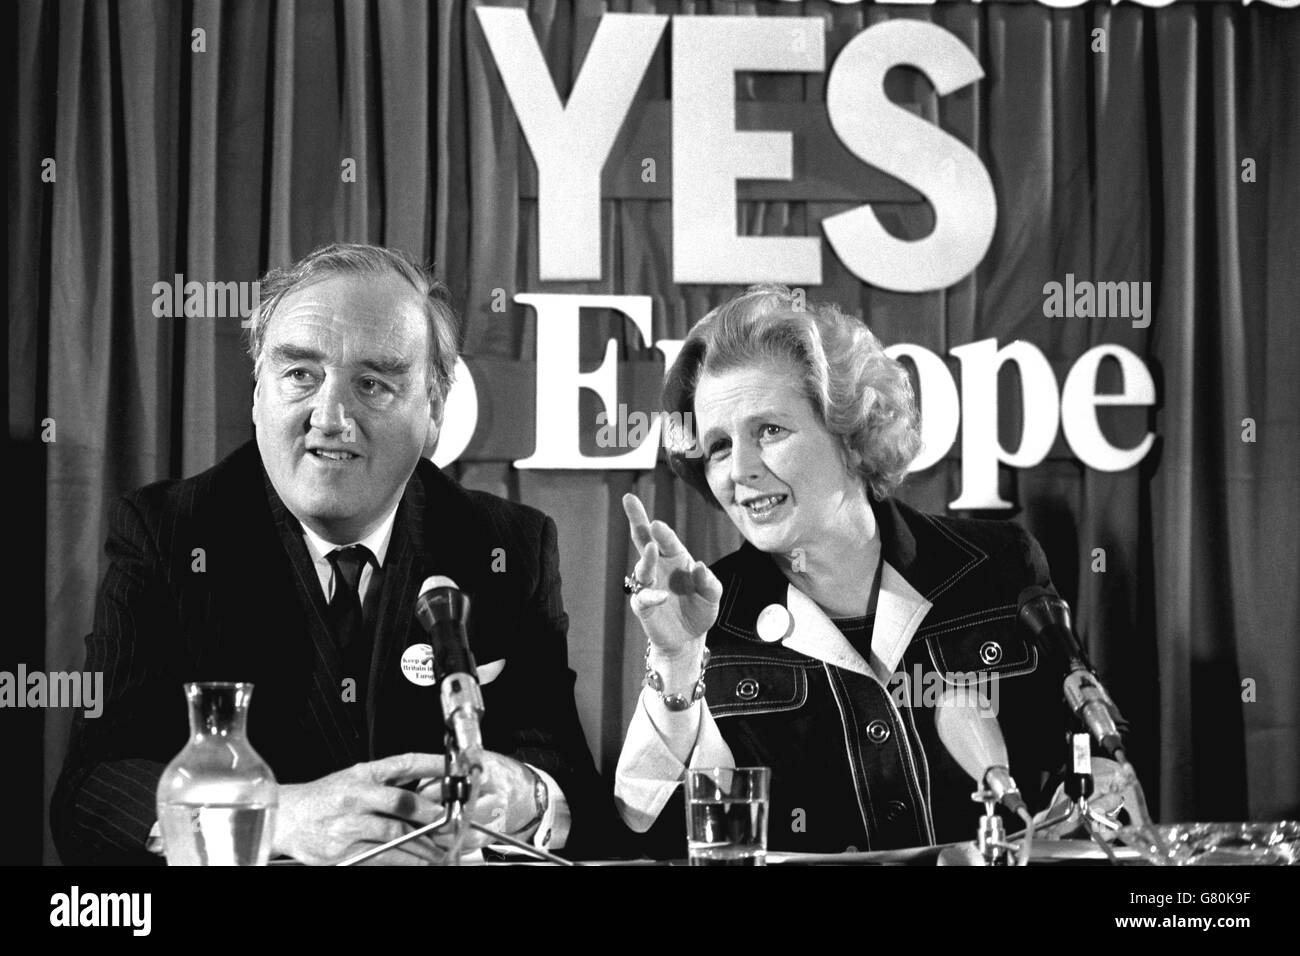 Margaret Thatcher, chef conservateur, et William Whitelaw, chef adjoint, lors de la conférence de presse du Groupe conservateur pour l'Europe, au bureau central des Conservateurs, à Smith Square, à Londres. Banque D'Images